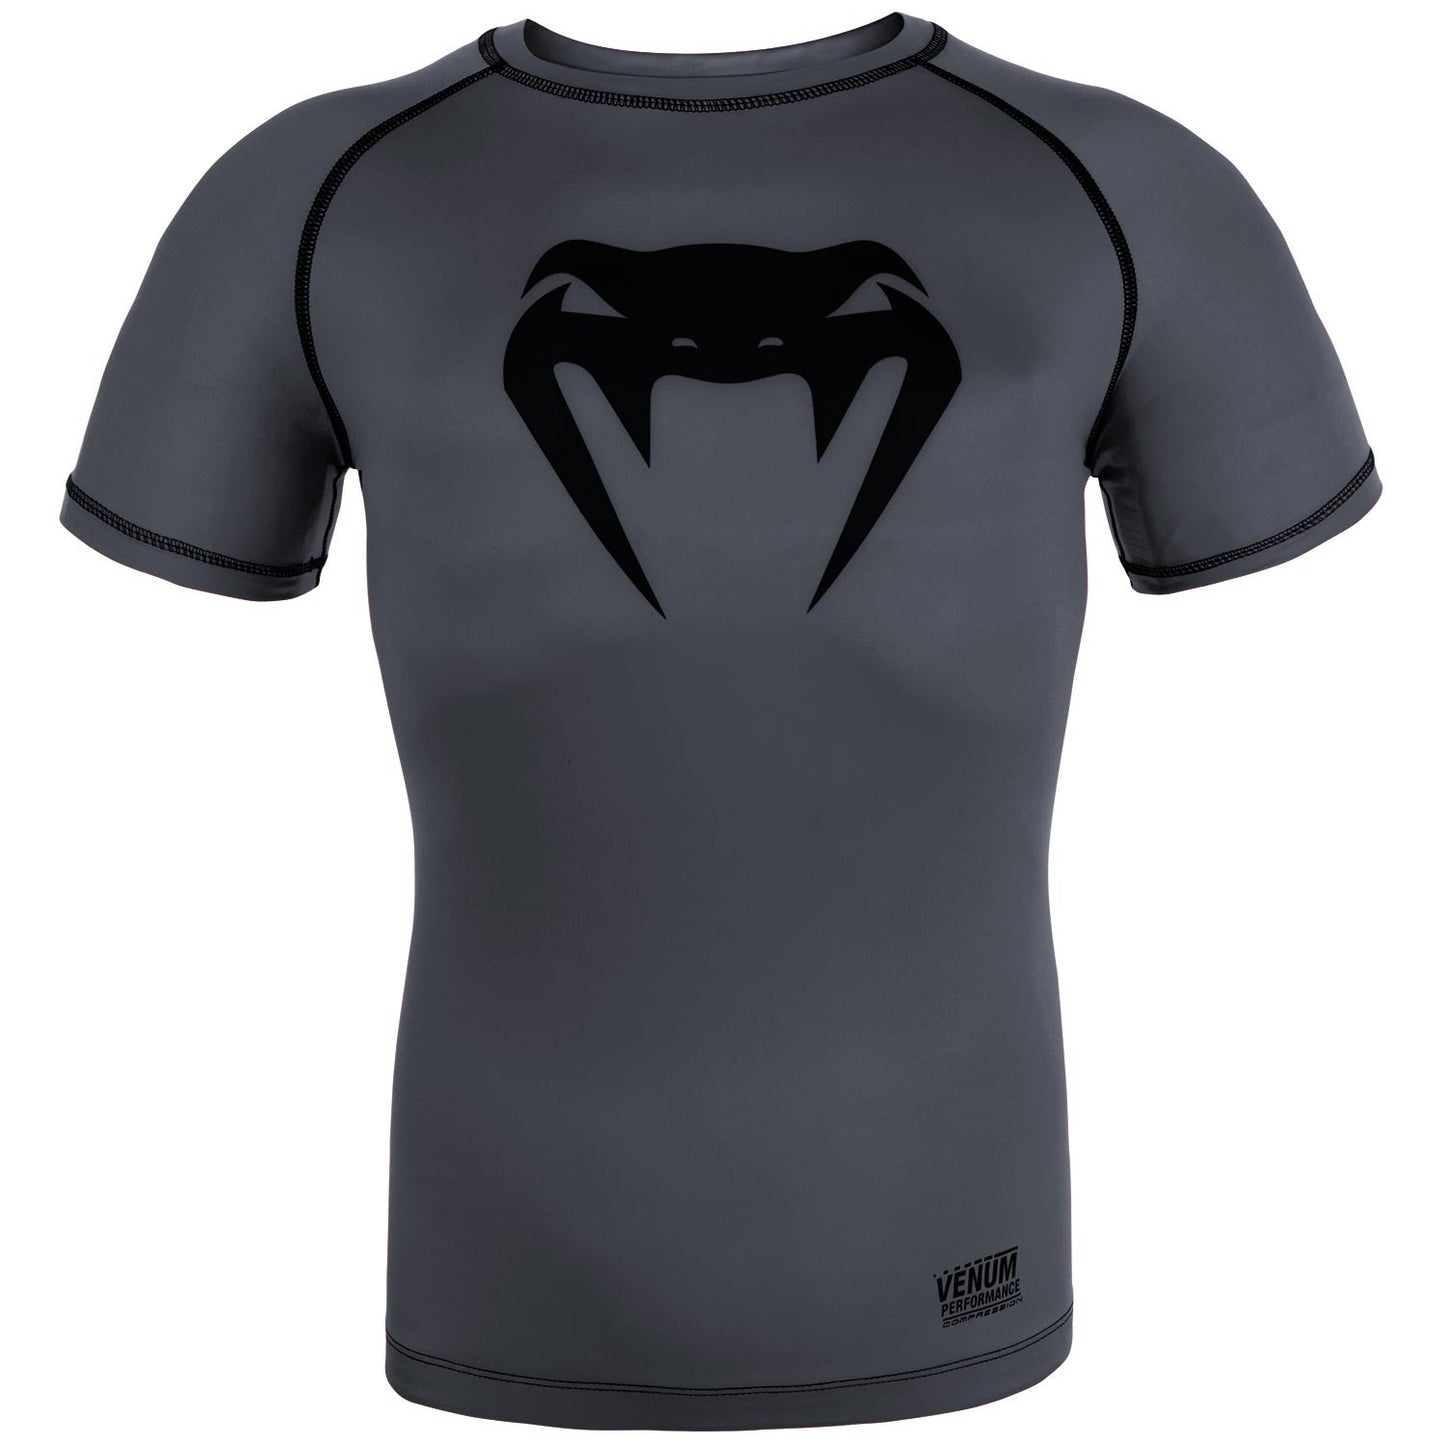 T-shirt de compression Venum Contender 3.0 - Manches courtes - Gris chiné/Noir - T-shirts de compression